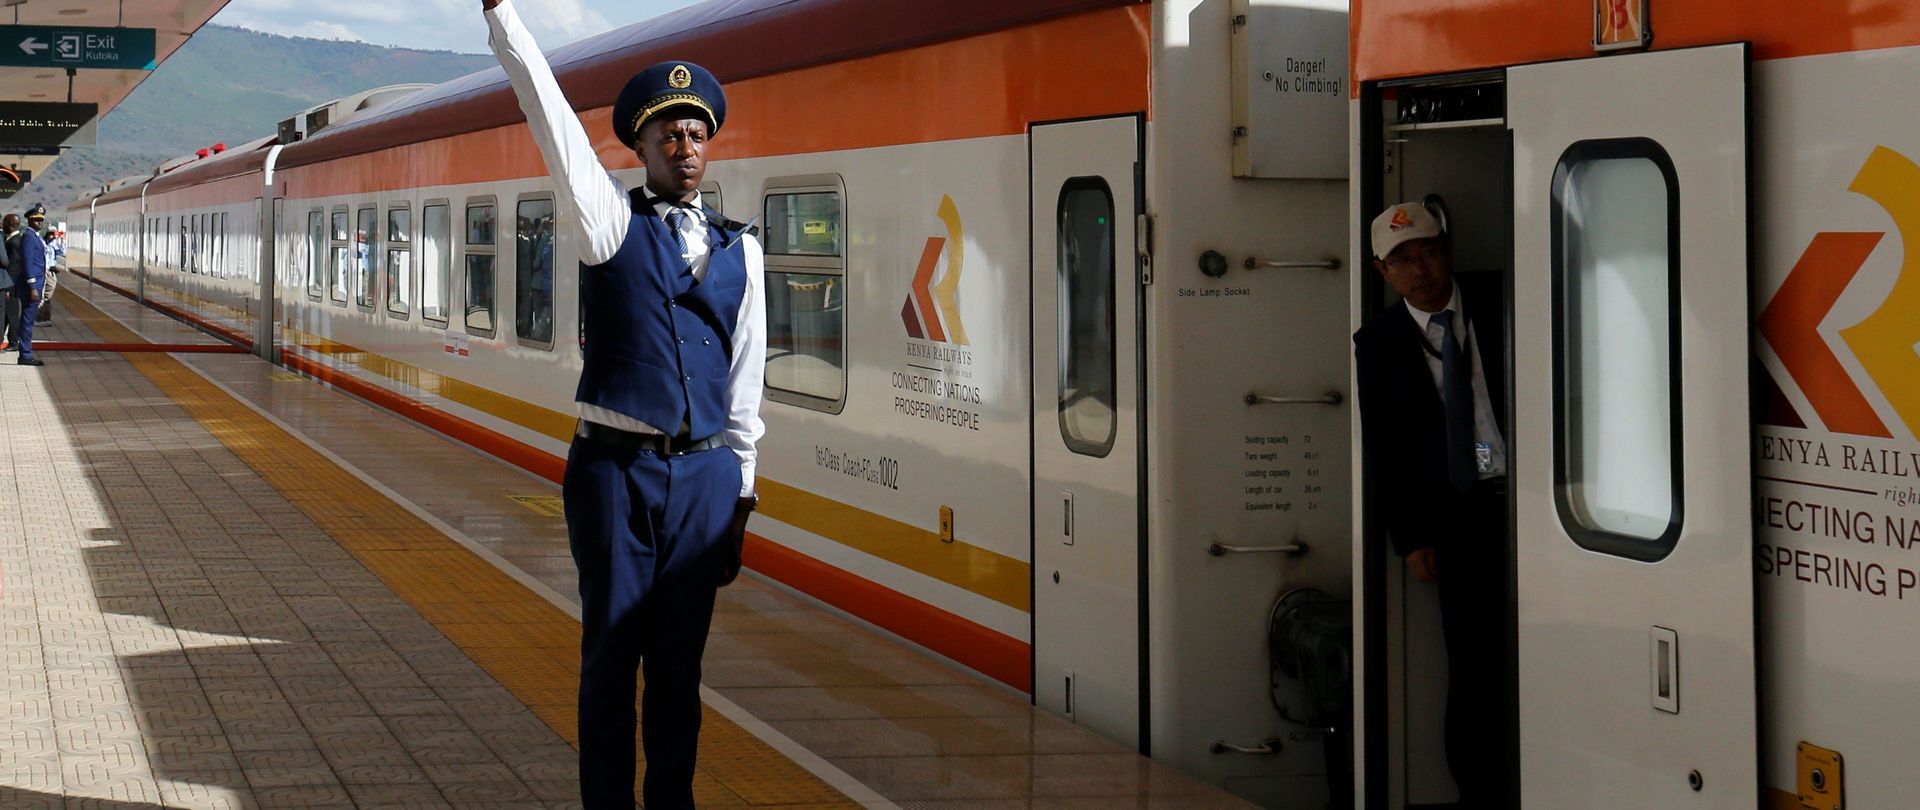 Ein Mitarbeiter der Kenya Railway gibt das Abfahrtssignal für einen Zug der Bahnlinie Mombasa-Nairobi- Naivasha. Die Strecke der Standard Gauge Railway (SGR) wurde durch einen chinesischen Konzern realisiert.